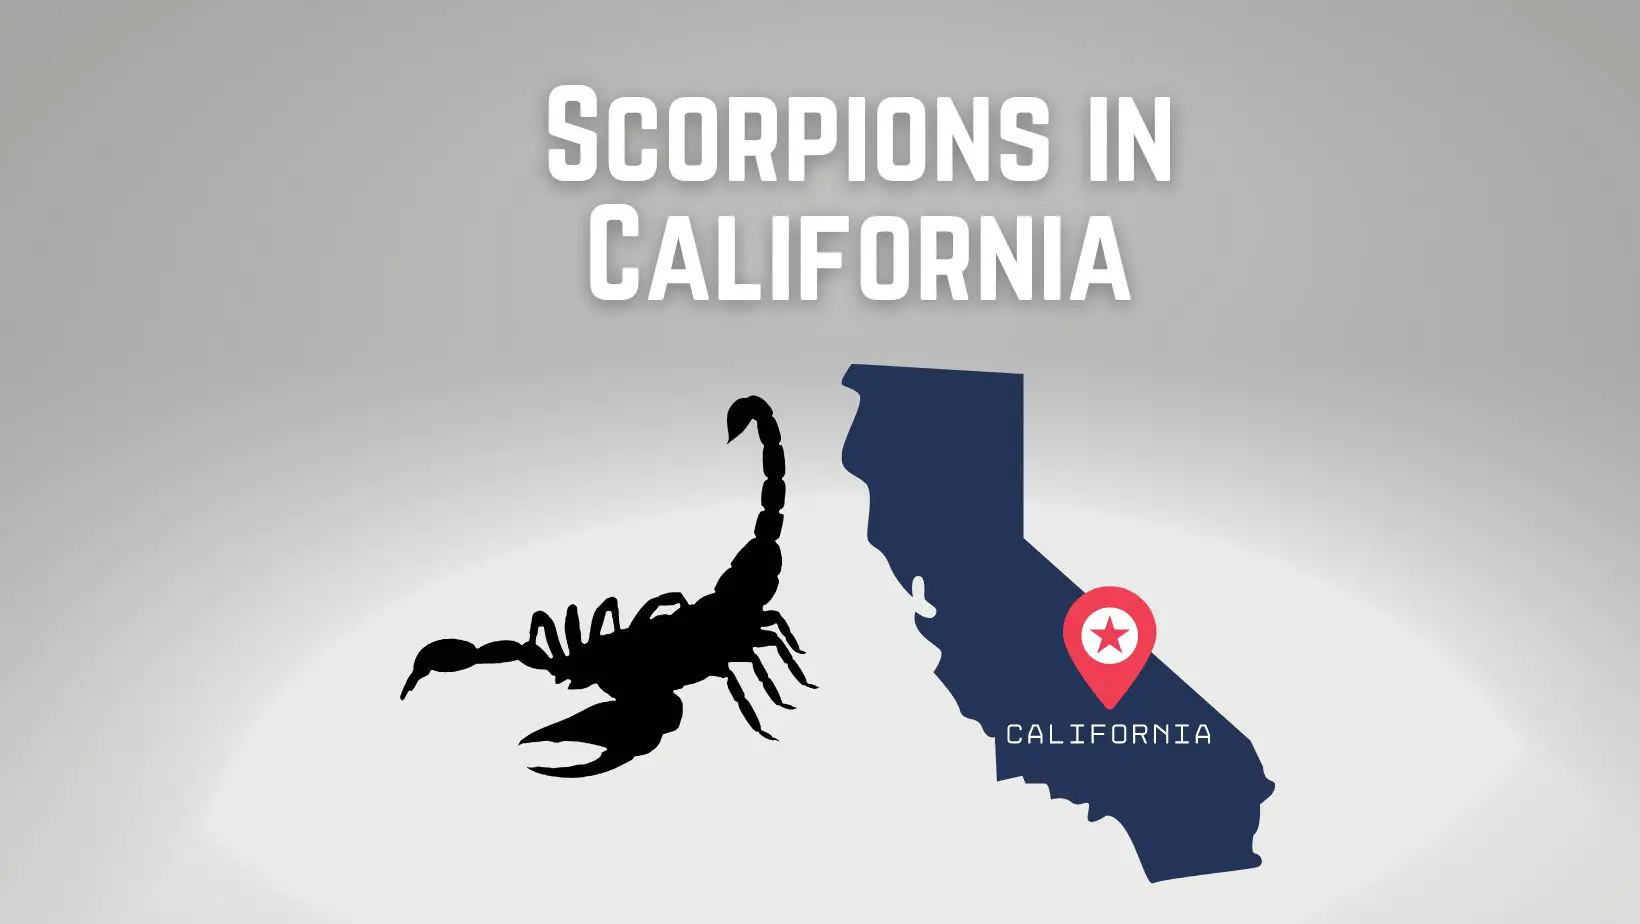 Scorpions in California